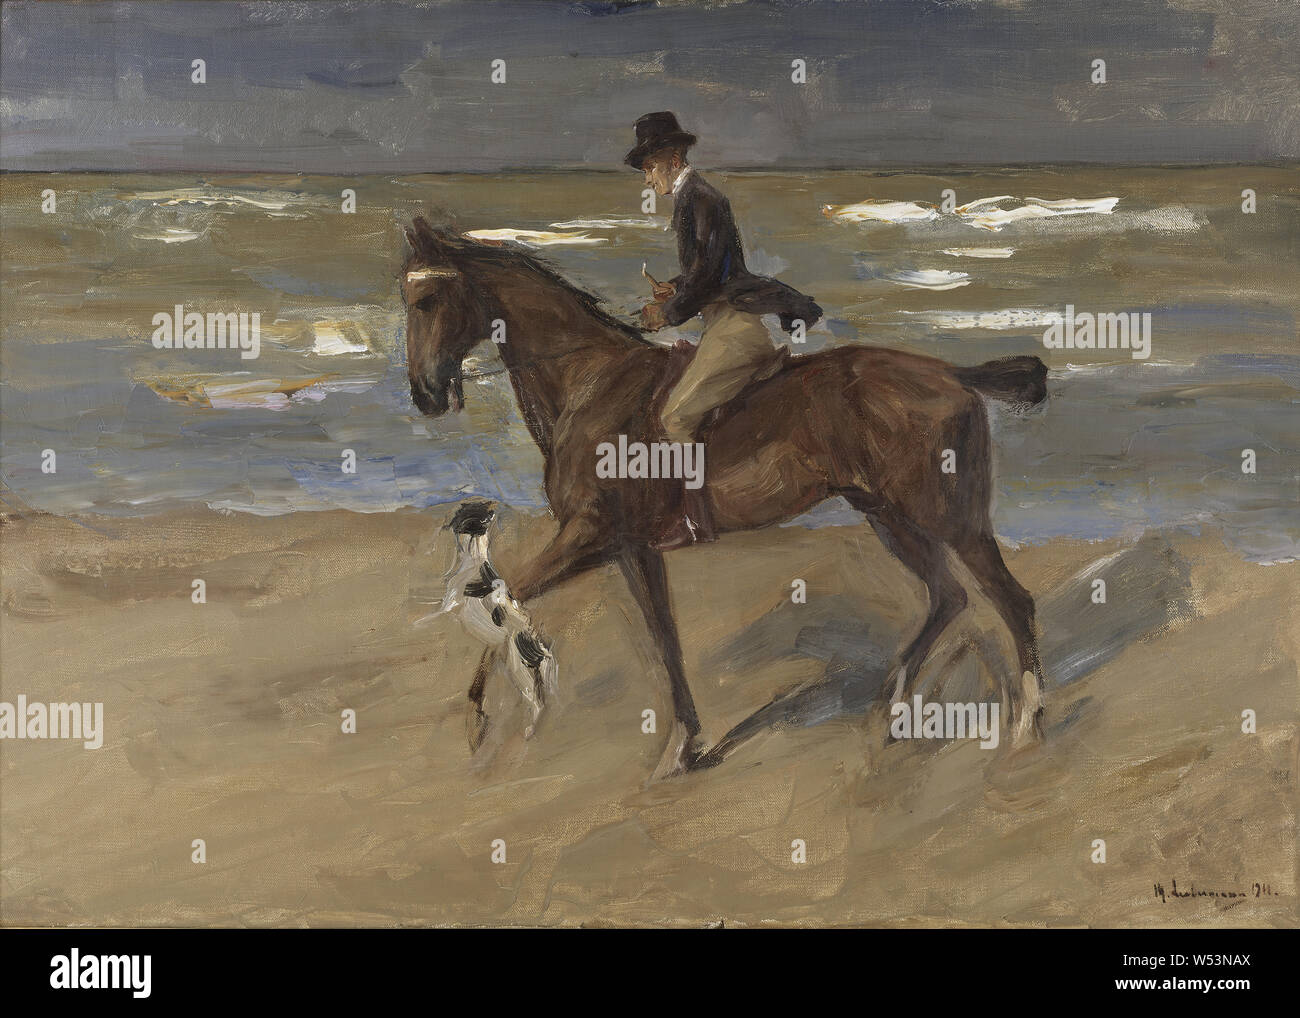 Max Liebermann, Reiter am Strand, Malerei, 1911, Öl auf Leinwand, Höhe 70 cm (27,5 Zoll), Breite 100 cm (39,3 Zoll), Liebermann 1911 Signerad, M. Stockfoto